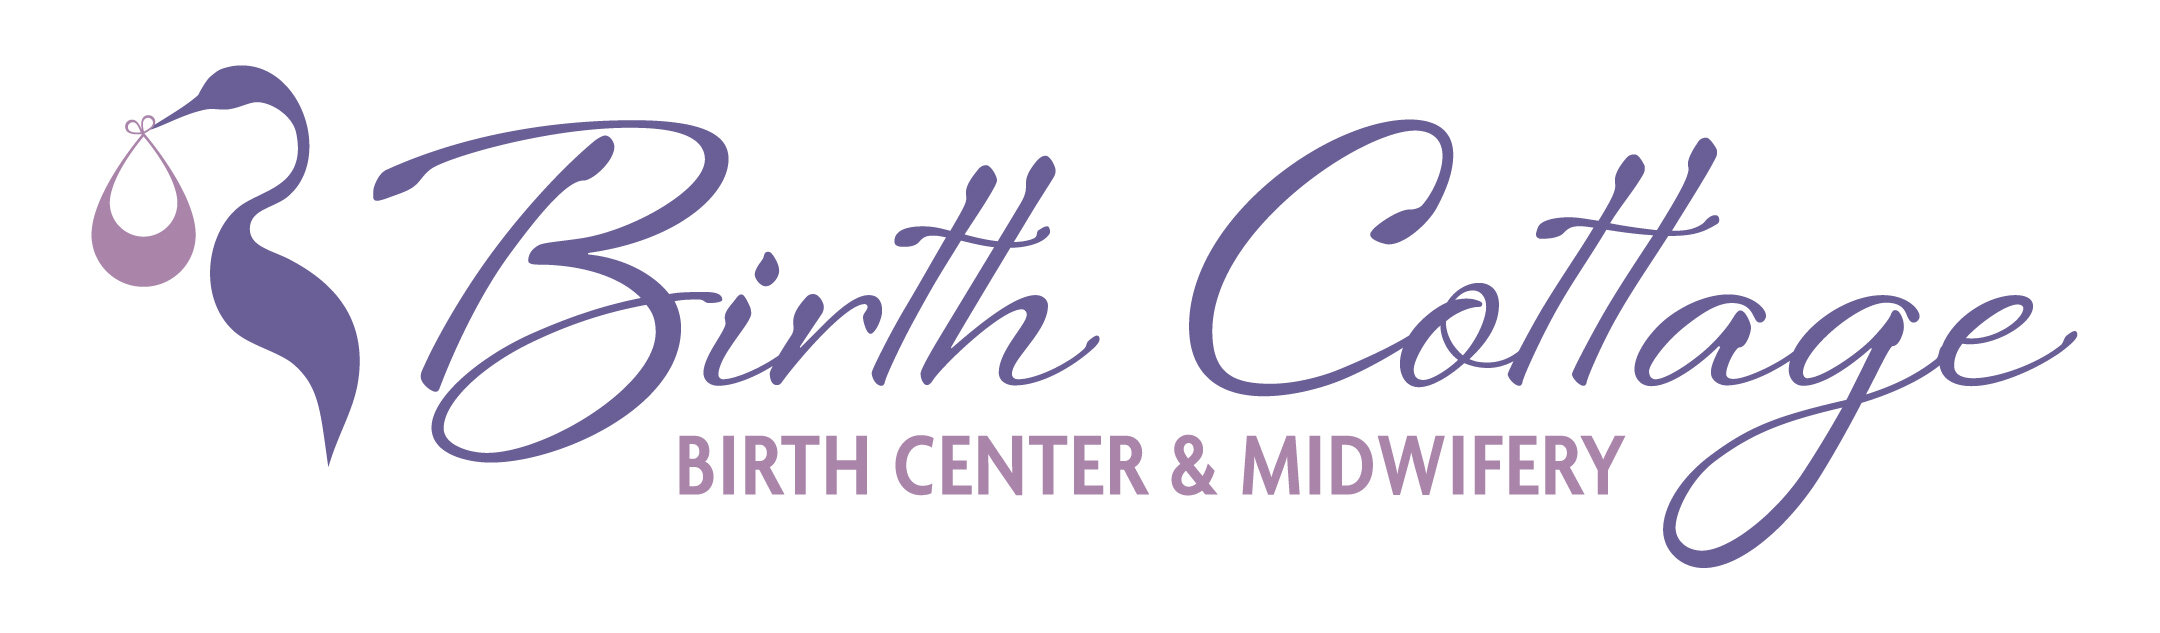 Birth Cottage Logo_FINAL 2019 (5).jpg